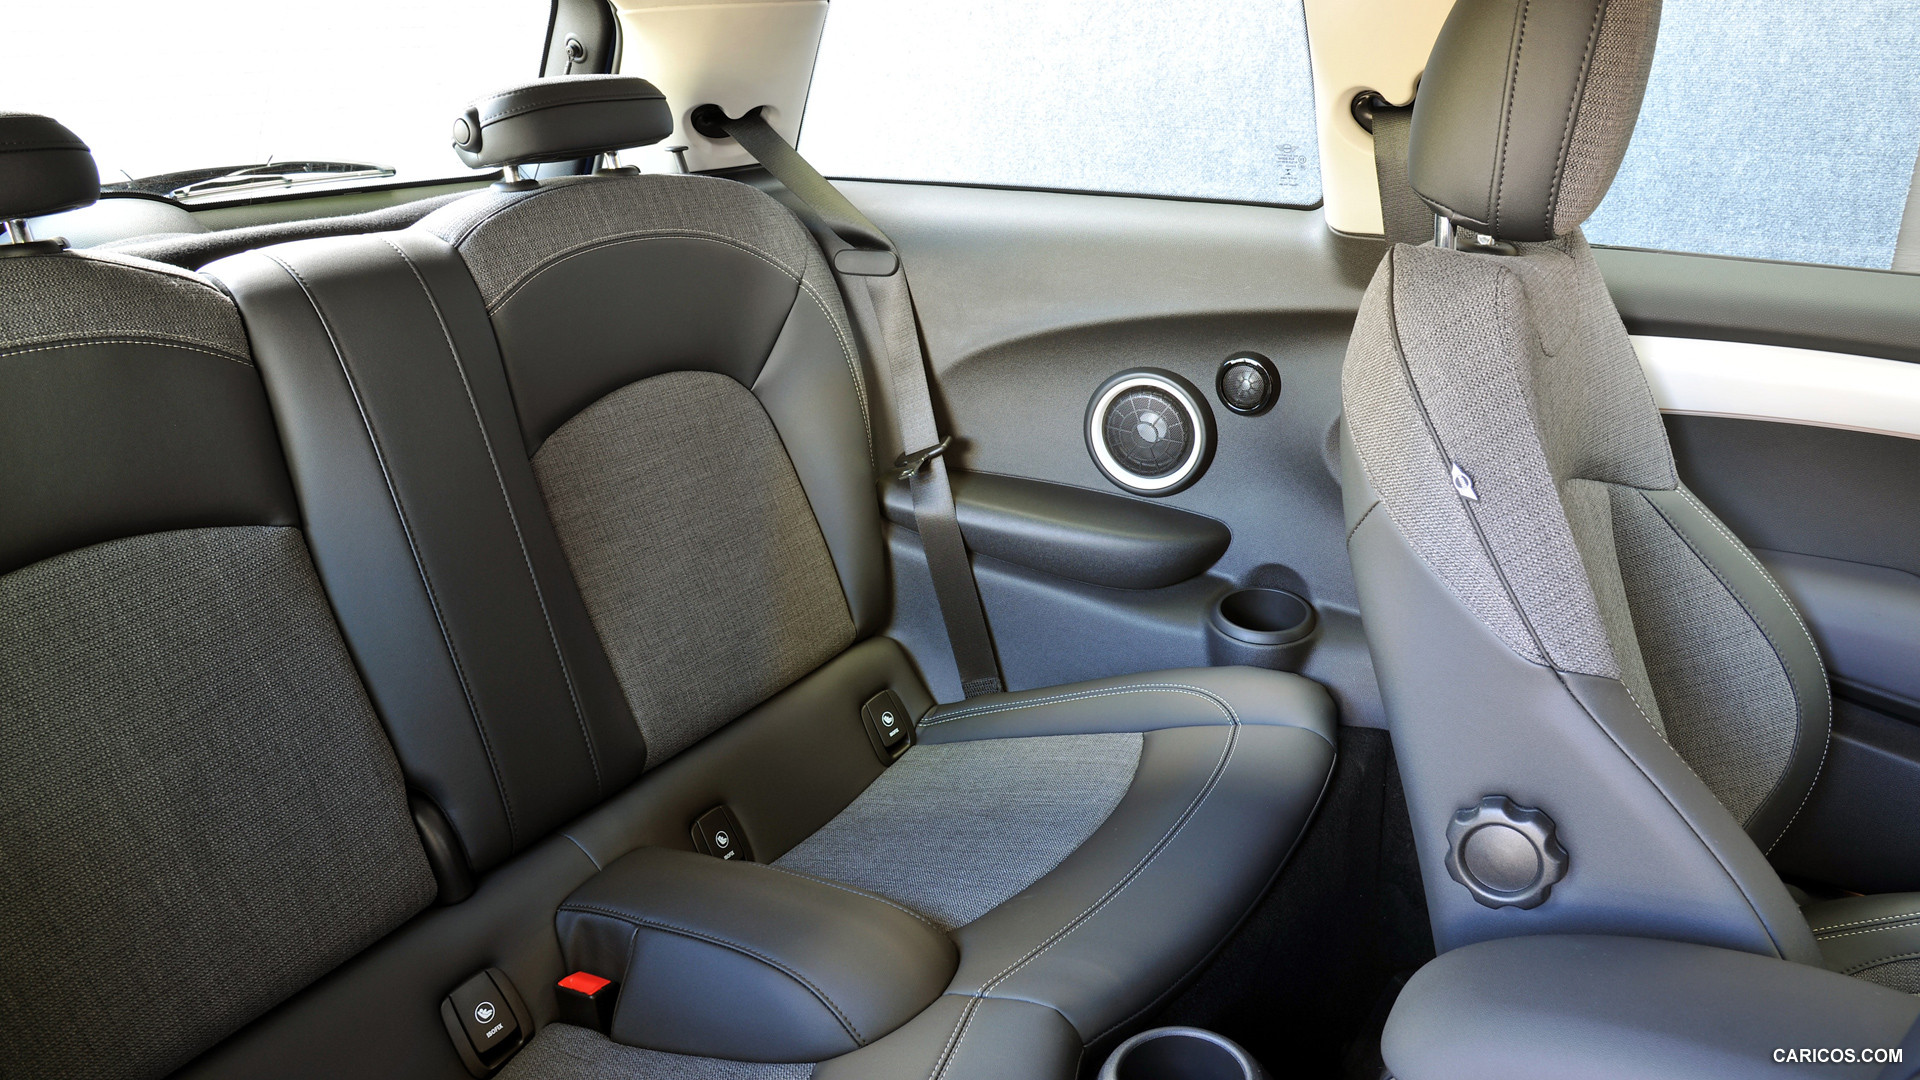 2015 MINI Cooper  - Interior Rear Seats, #191 of 280